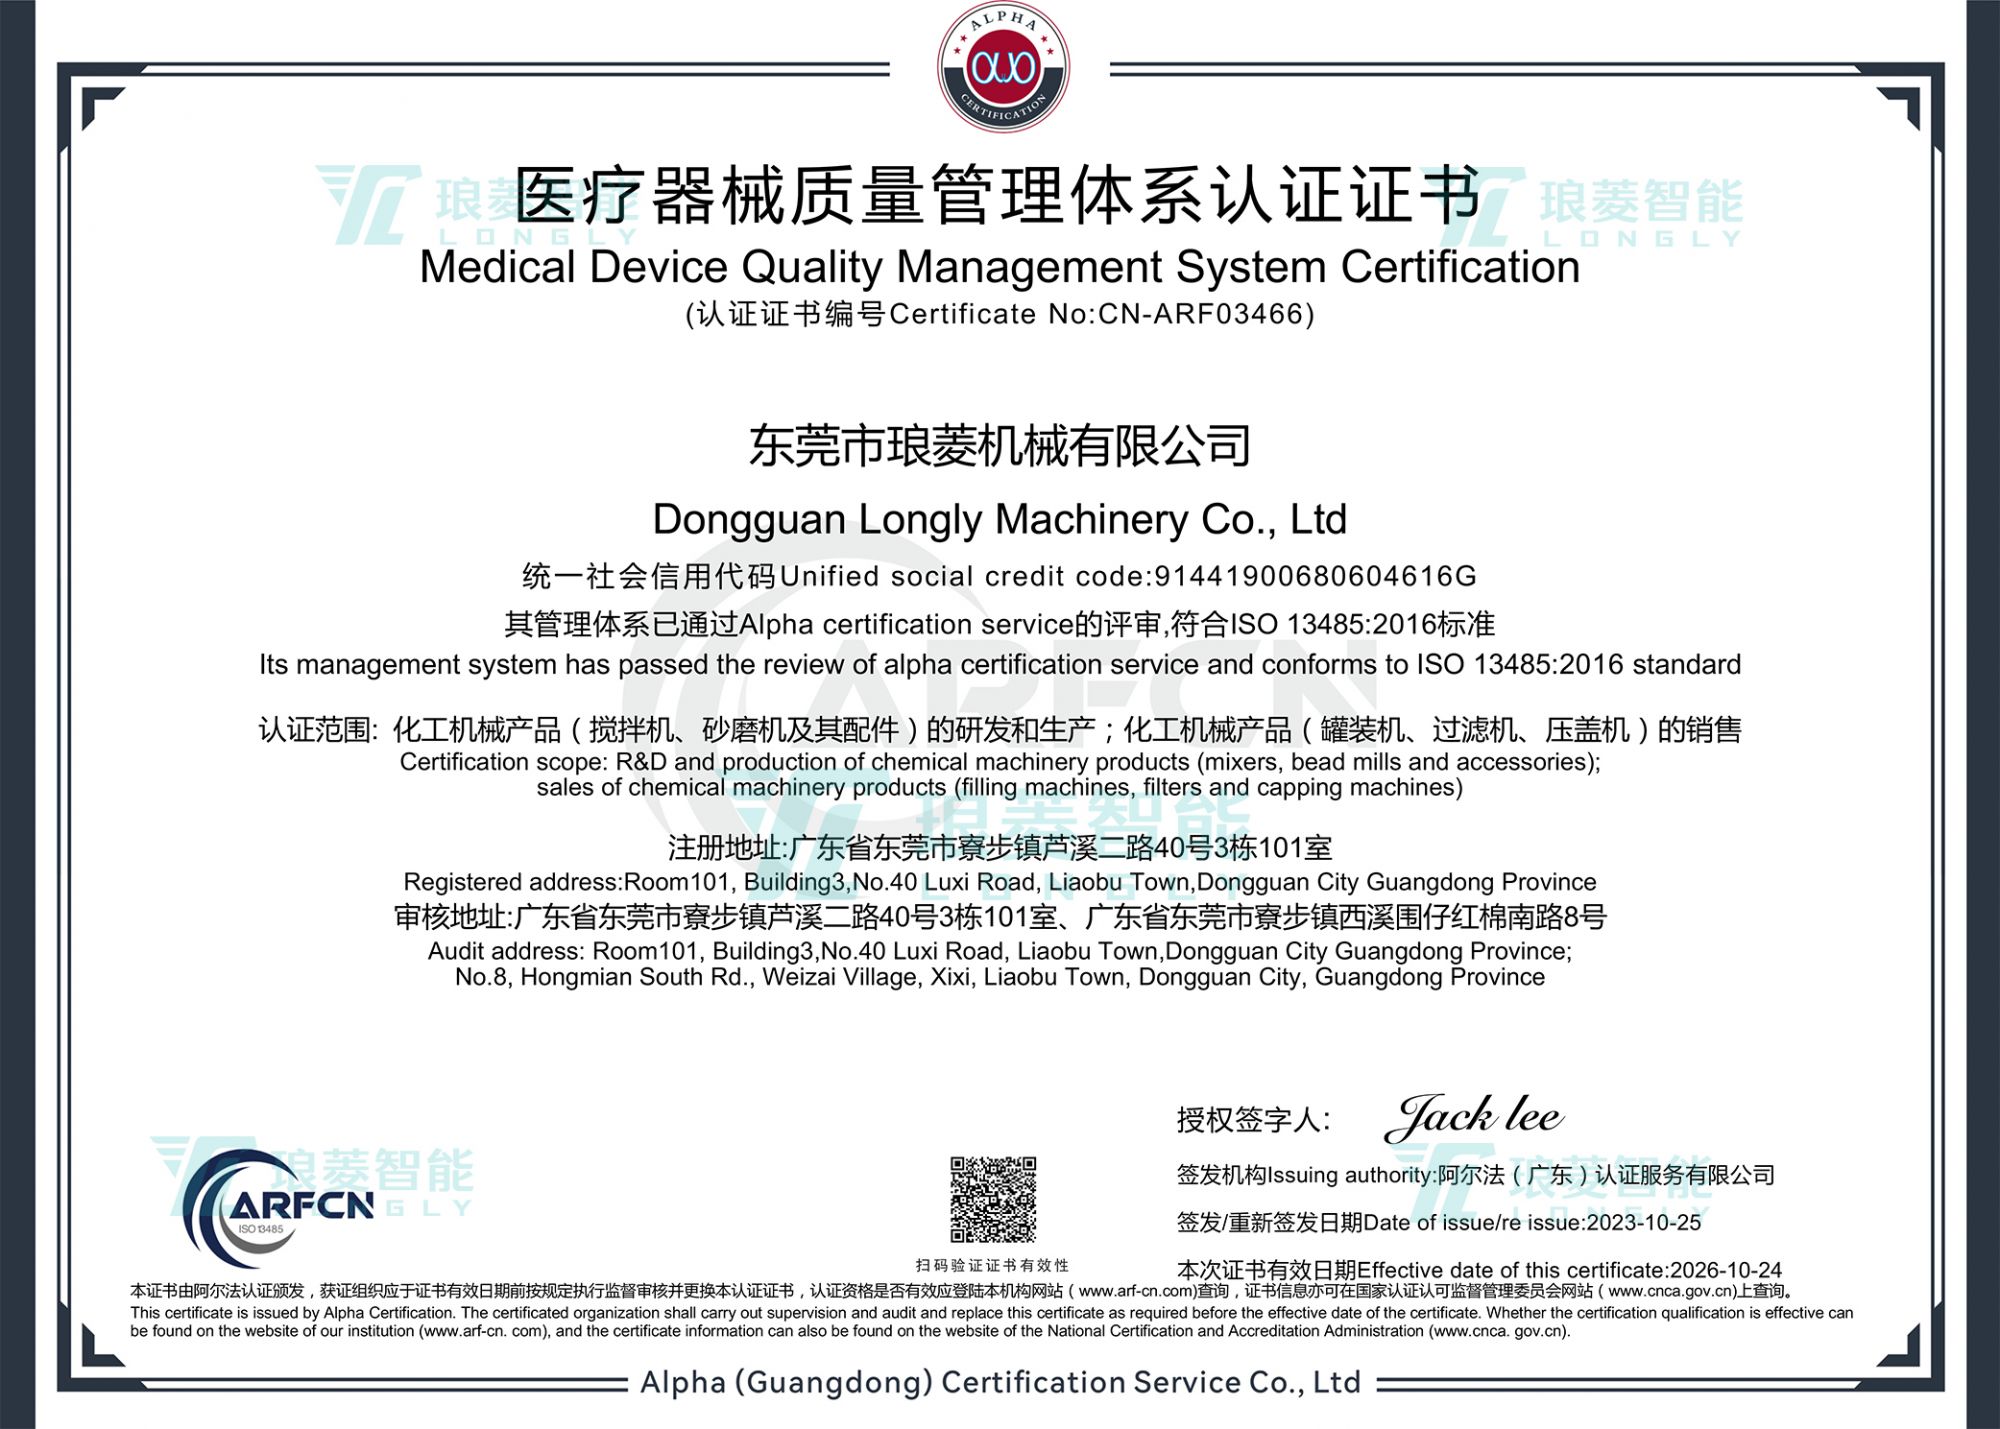 醫療器材品質管理系統認證證書